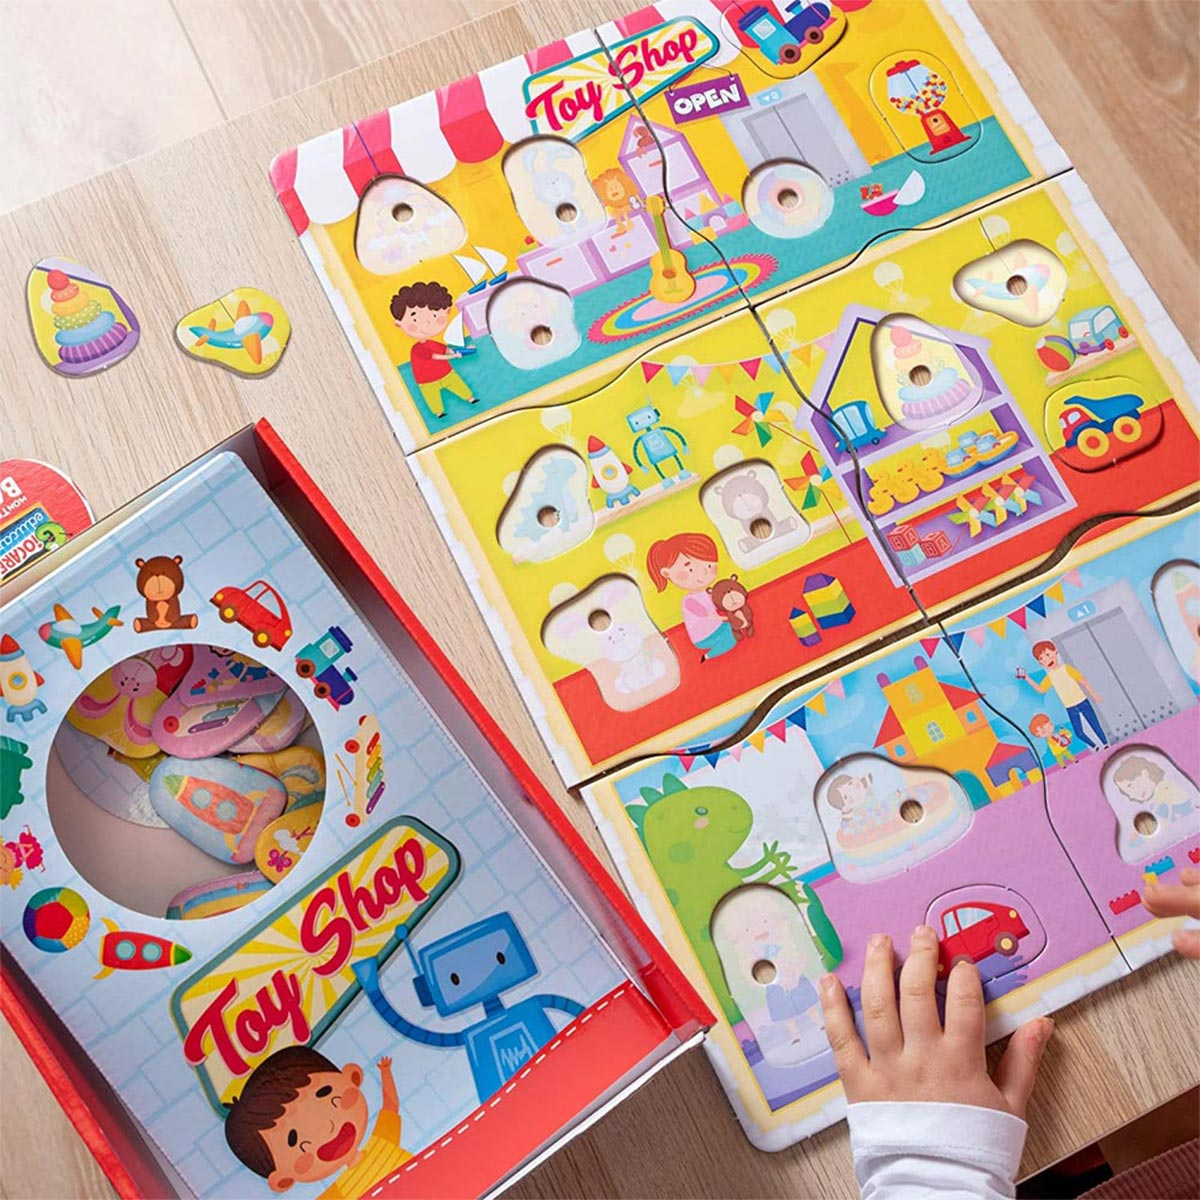 Spielzeugladen, Montessori Baby Lernspiele, Lisciani & Spielebox CO von LERNEN mehrfarbig